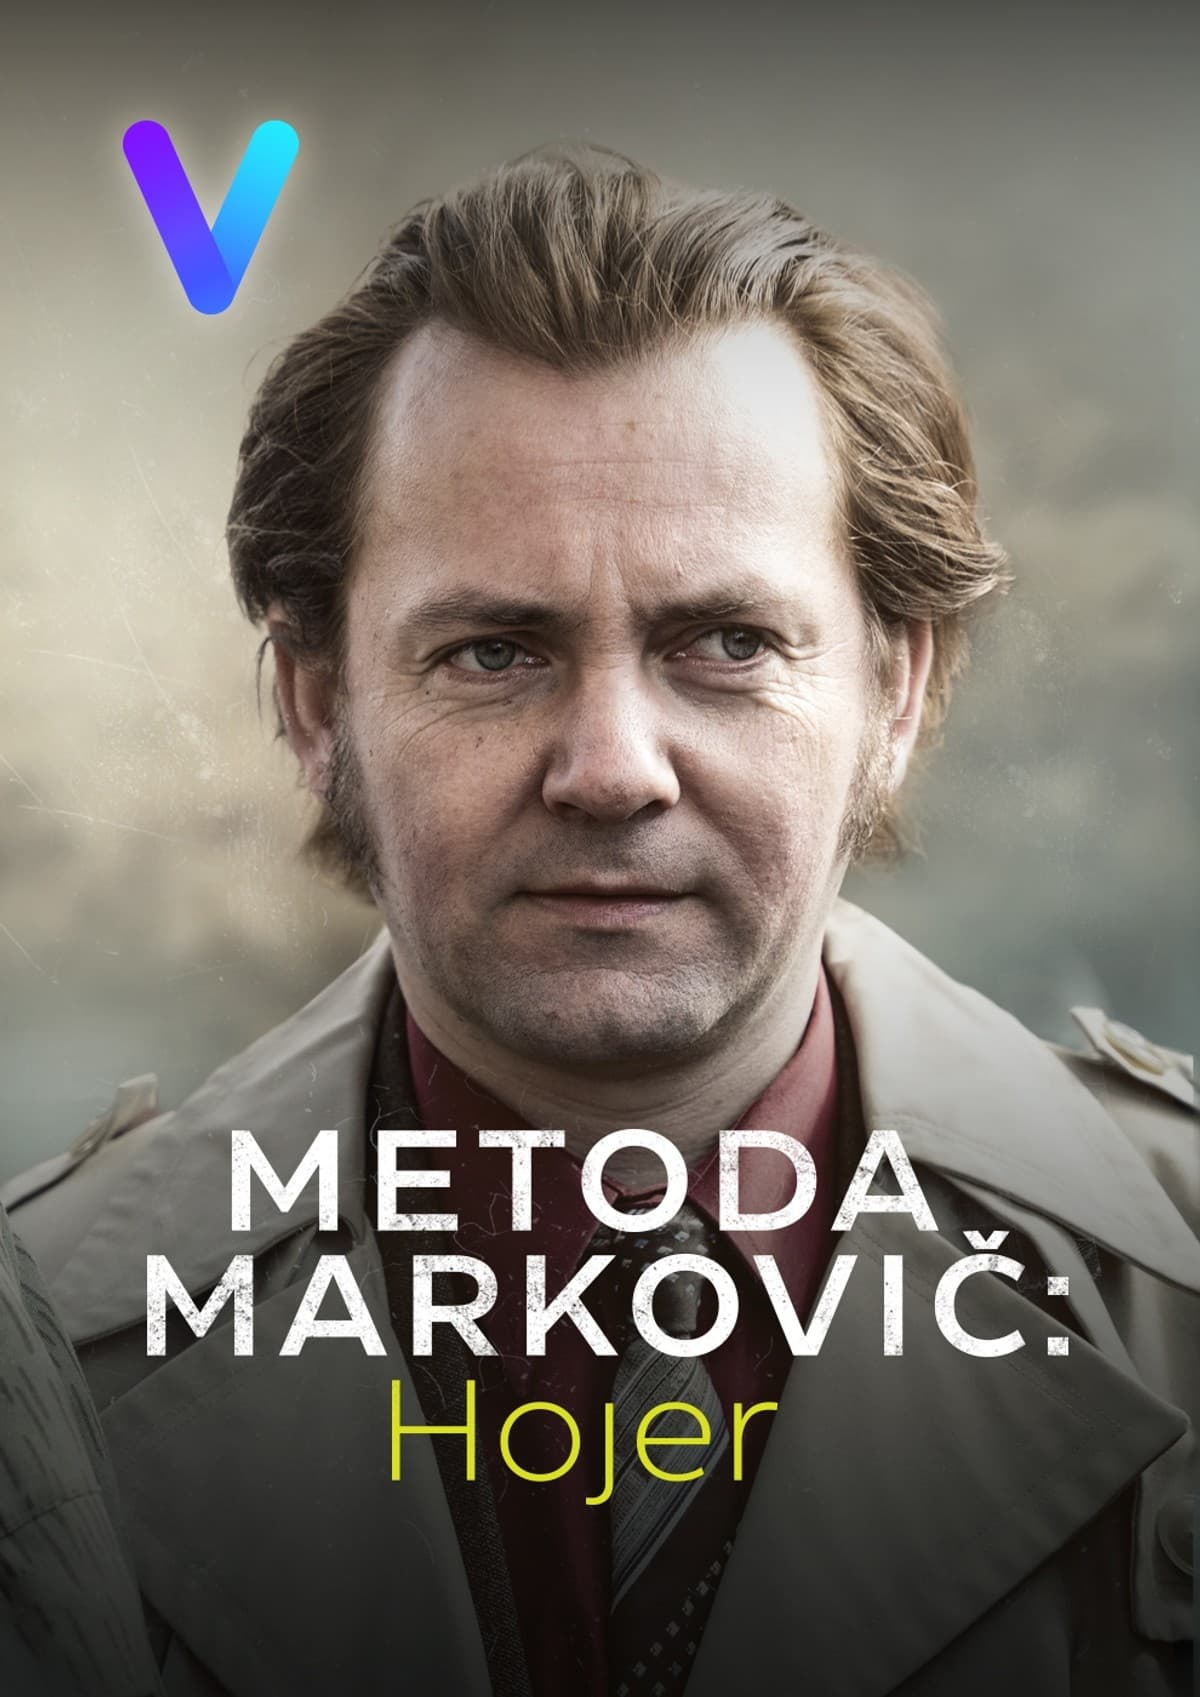 Plakát pro film “Metoda Markovič: Hojer”